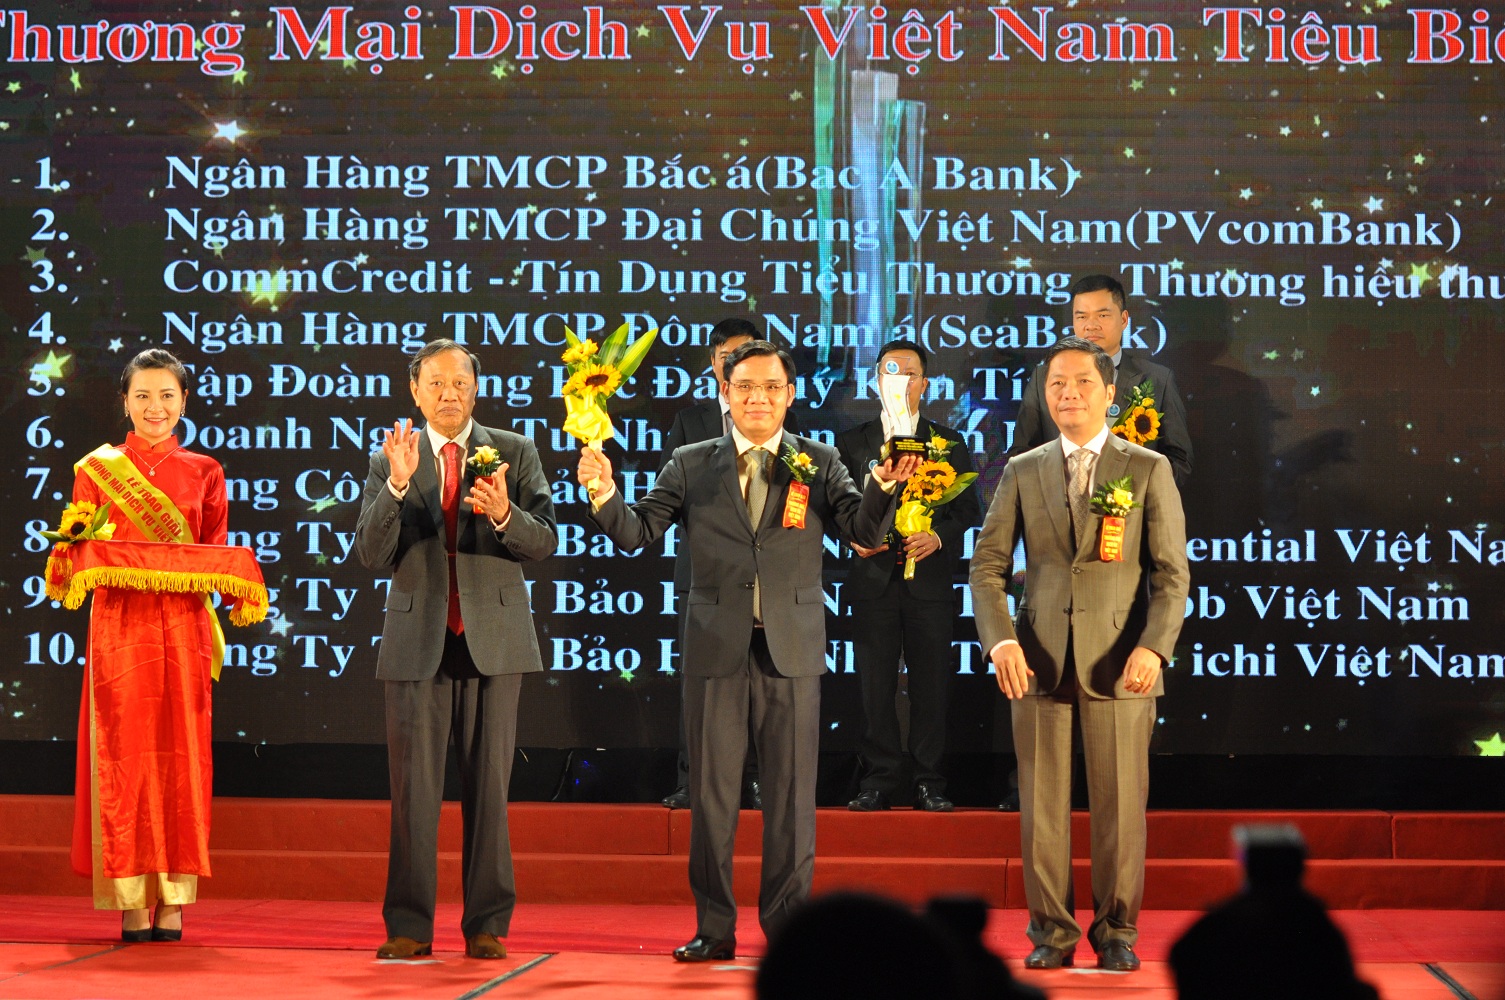 Đại diện SeABank nhận giải thưởng “Thương mại dịch vụ Việt Nam